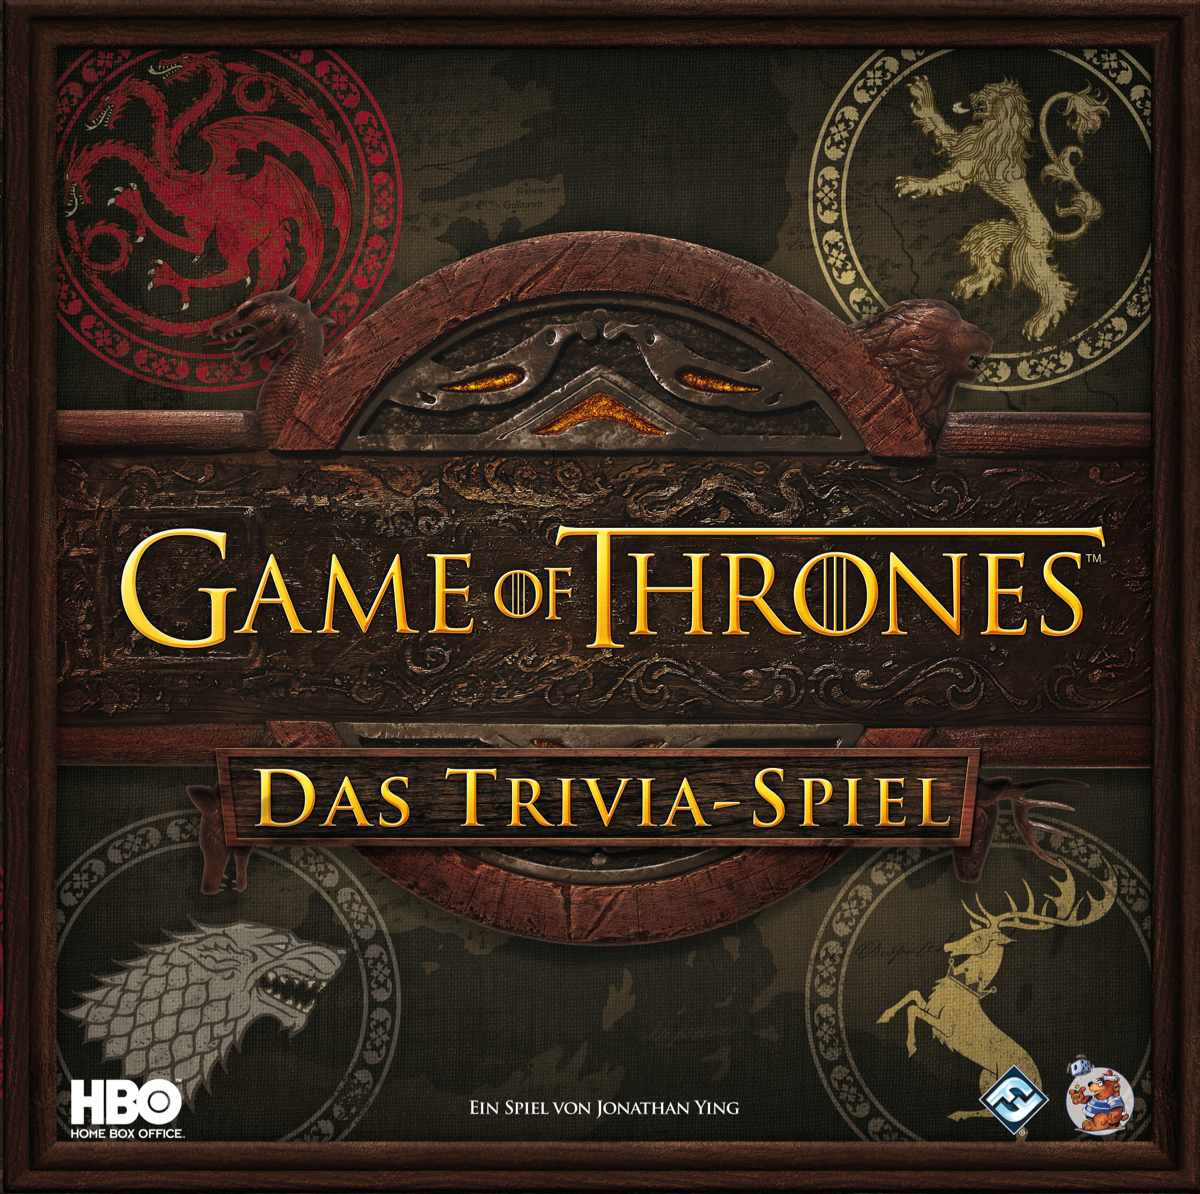 Game of Thrones - Das Trivia-Spiel im Handel erhältlich